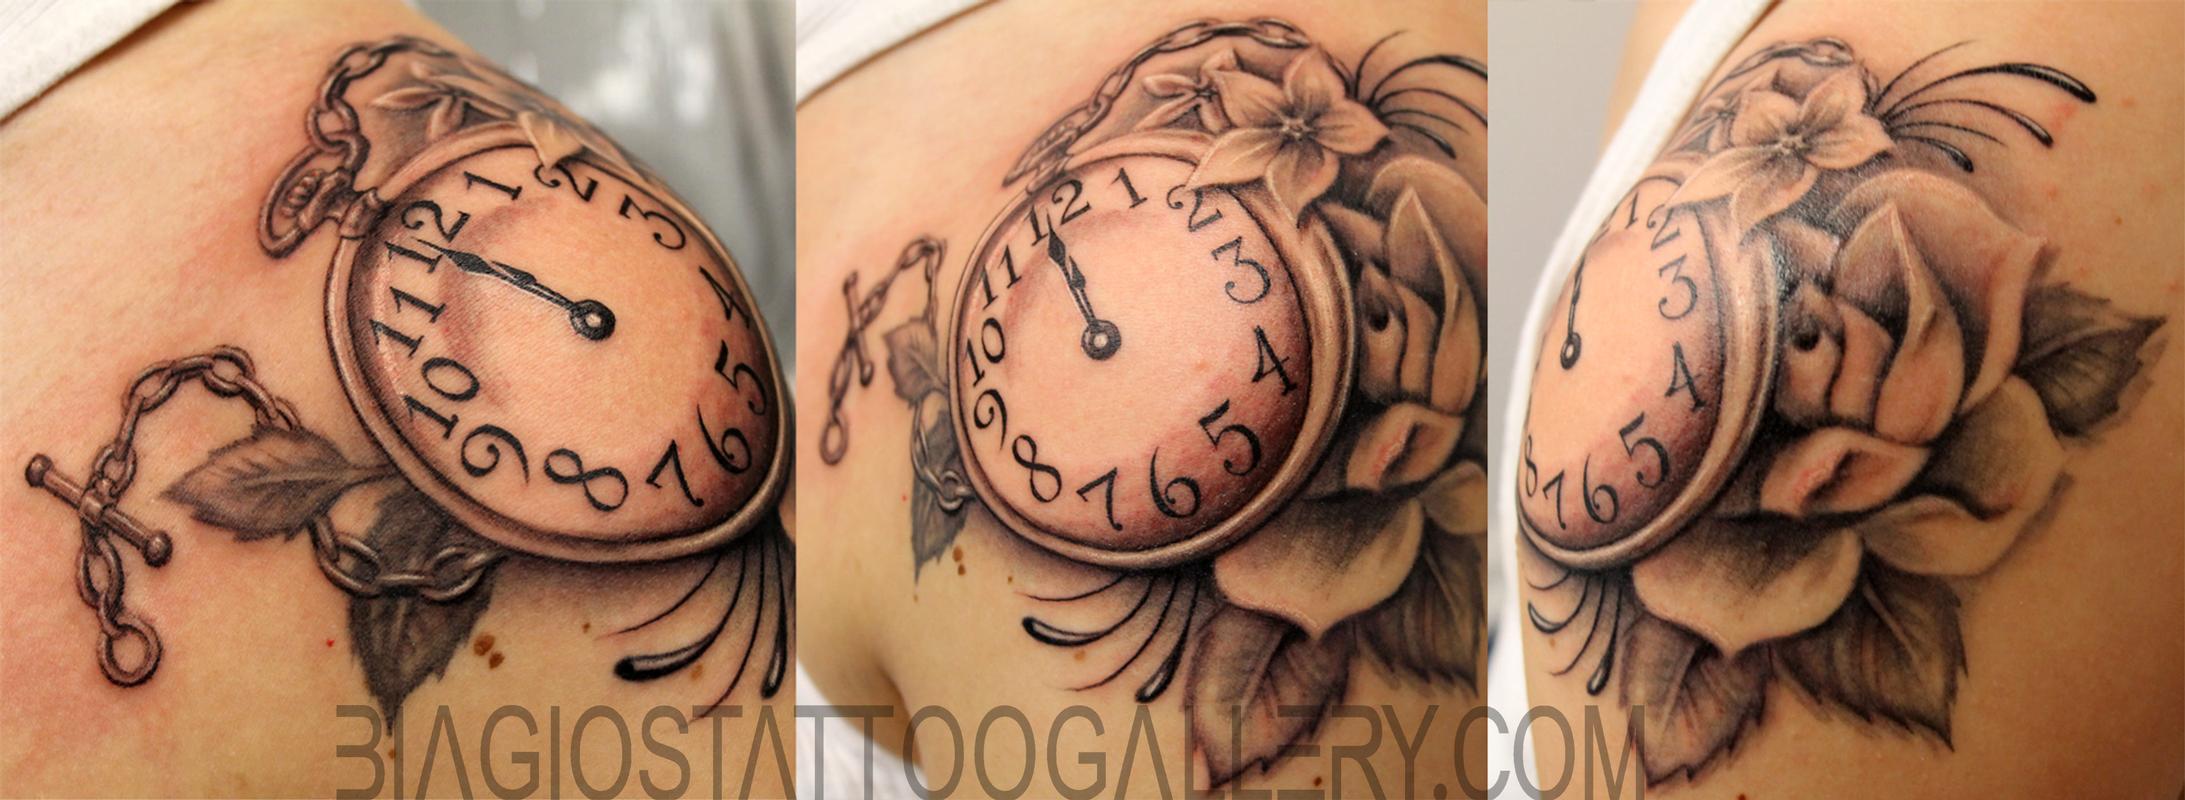 41 Fanciful Clock Tattoos On Back  Tattoo Designs  TattoosBagcom